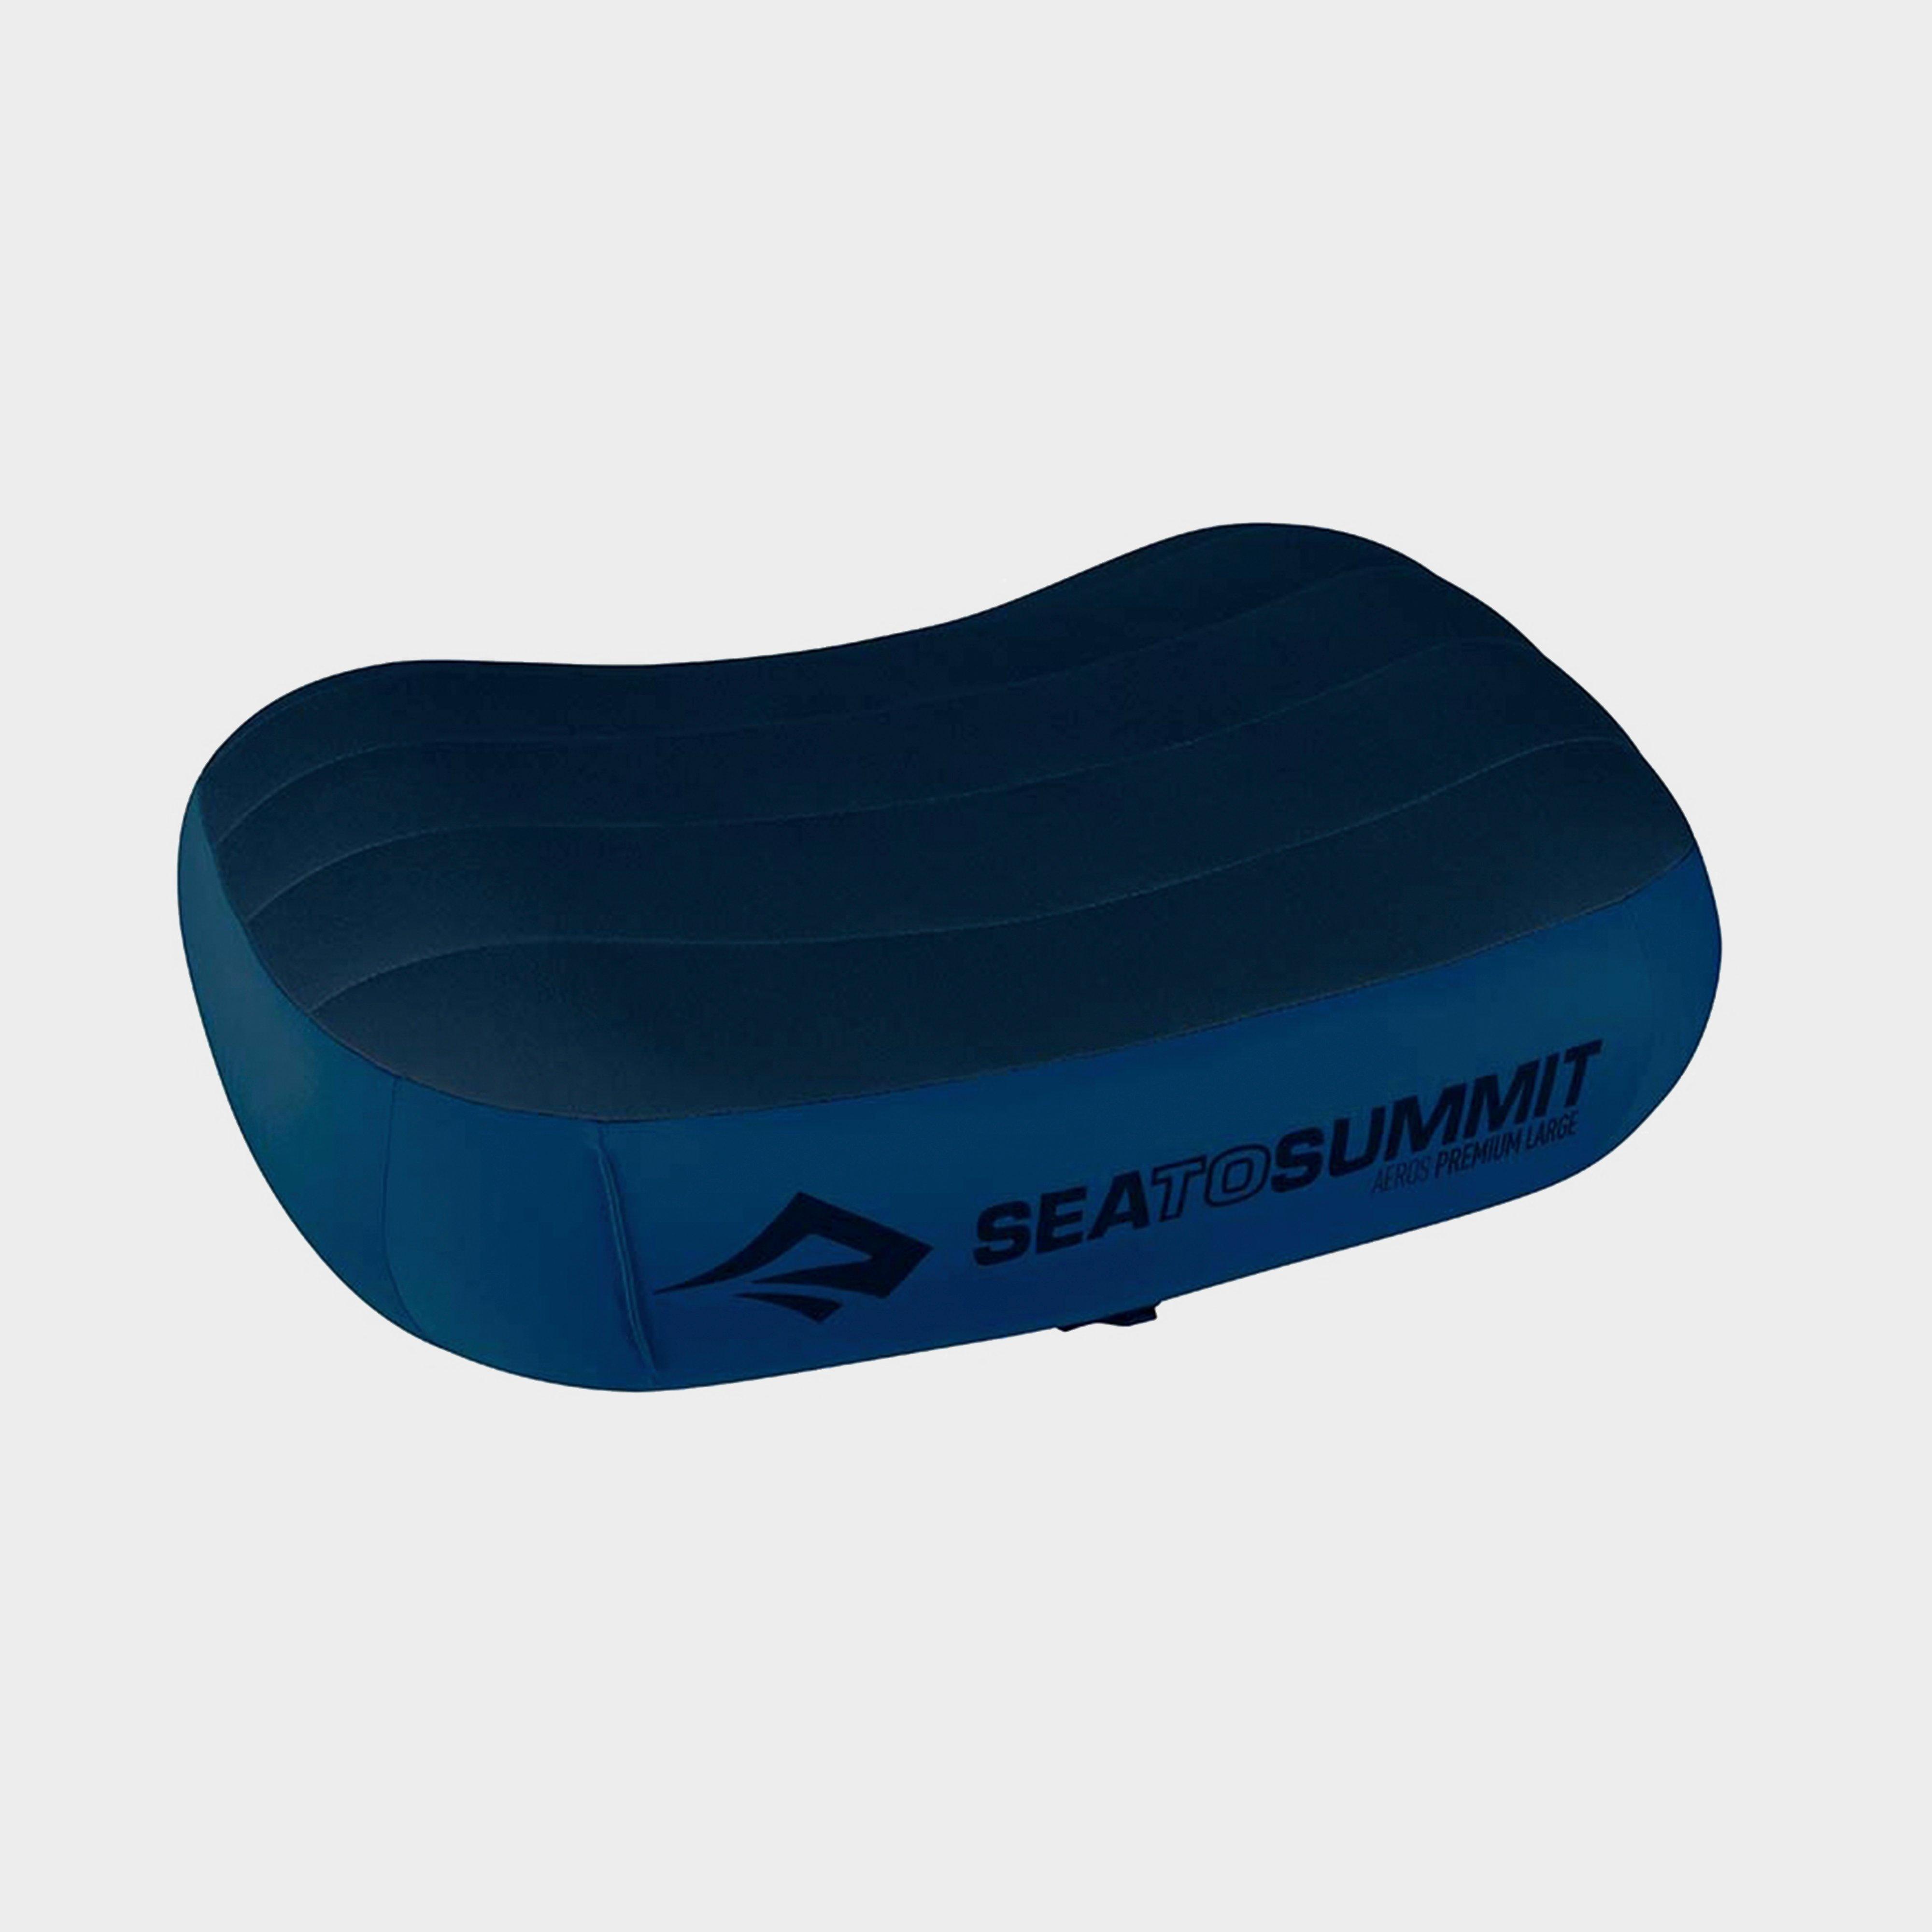 Sea to Summit Sea To Summit Aeros Premium Pillow (Regular) - Navy, Navy